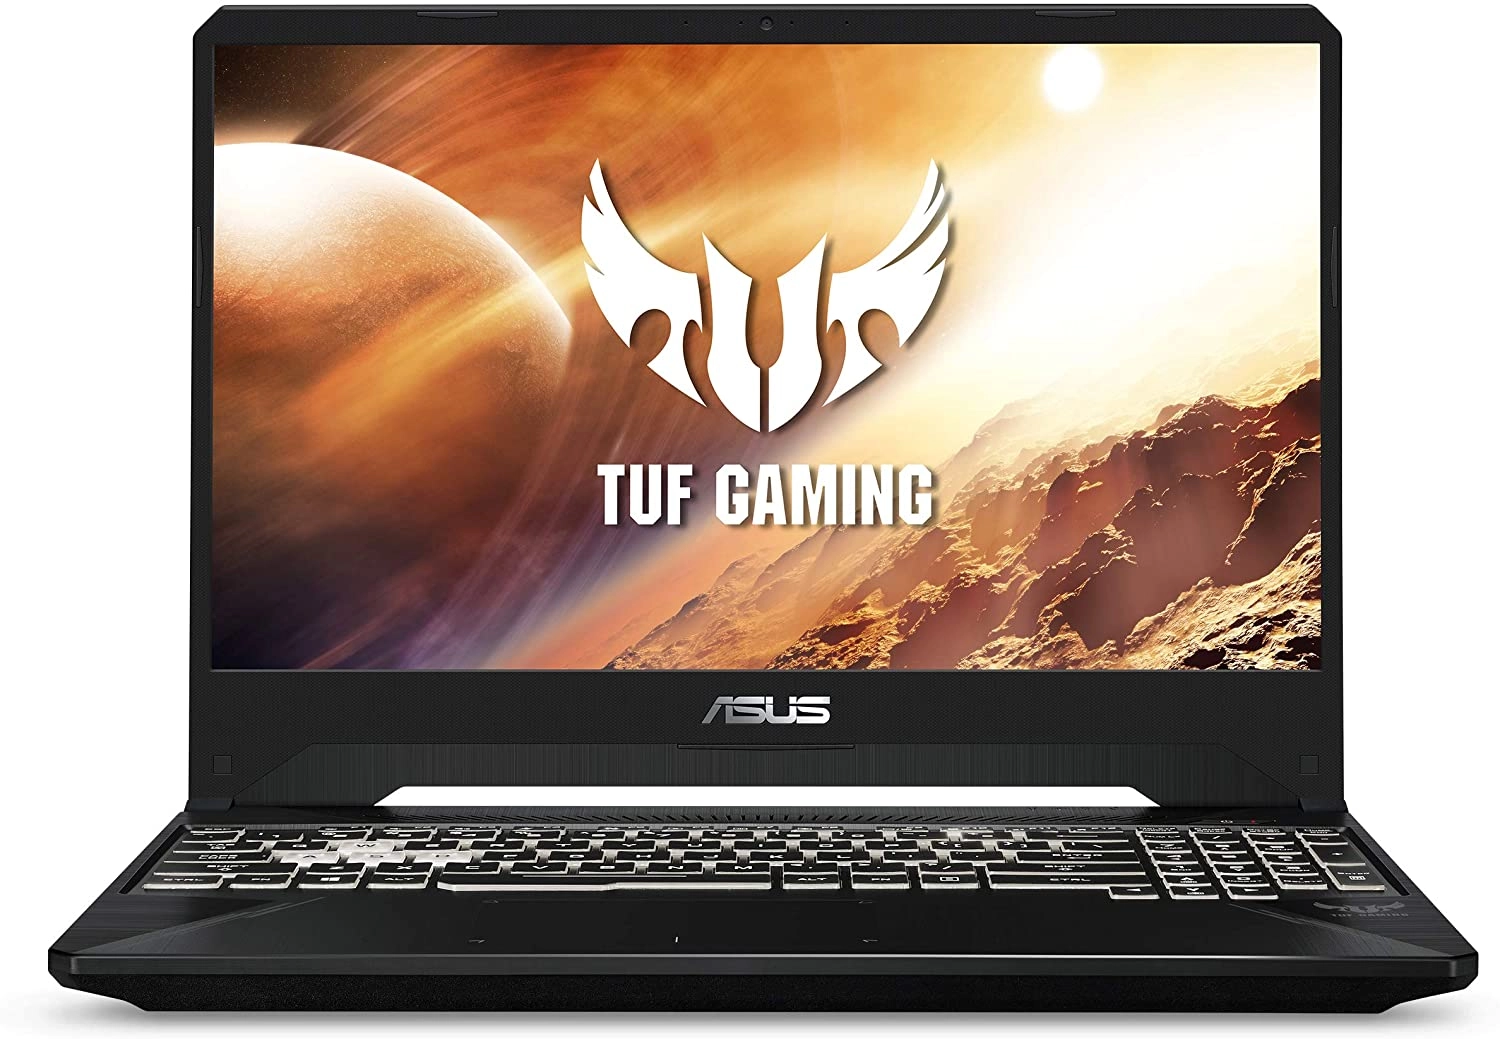 Asus TUF Gaming 15 laptop image